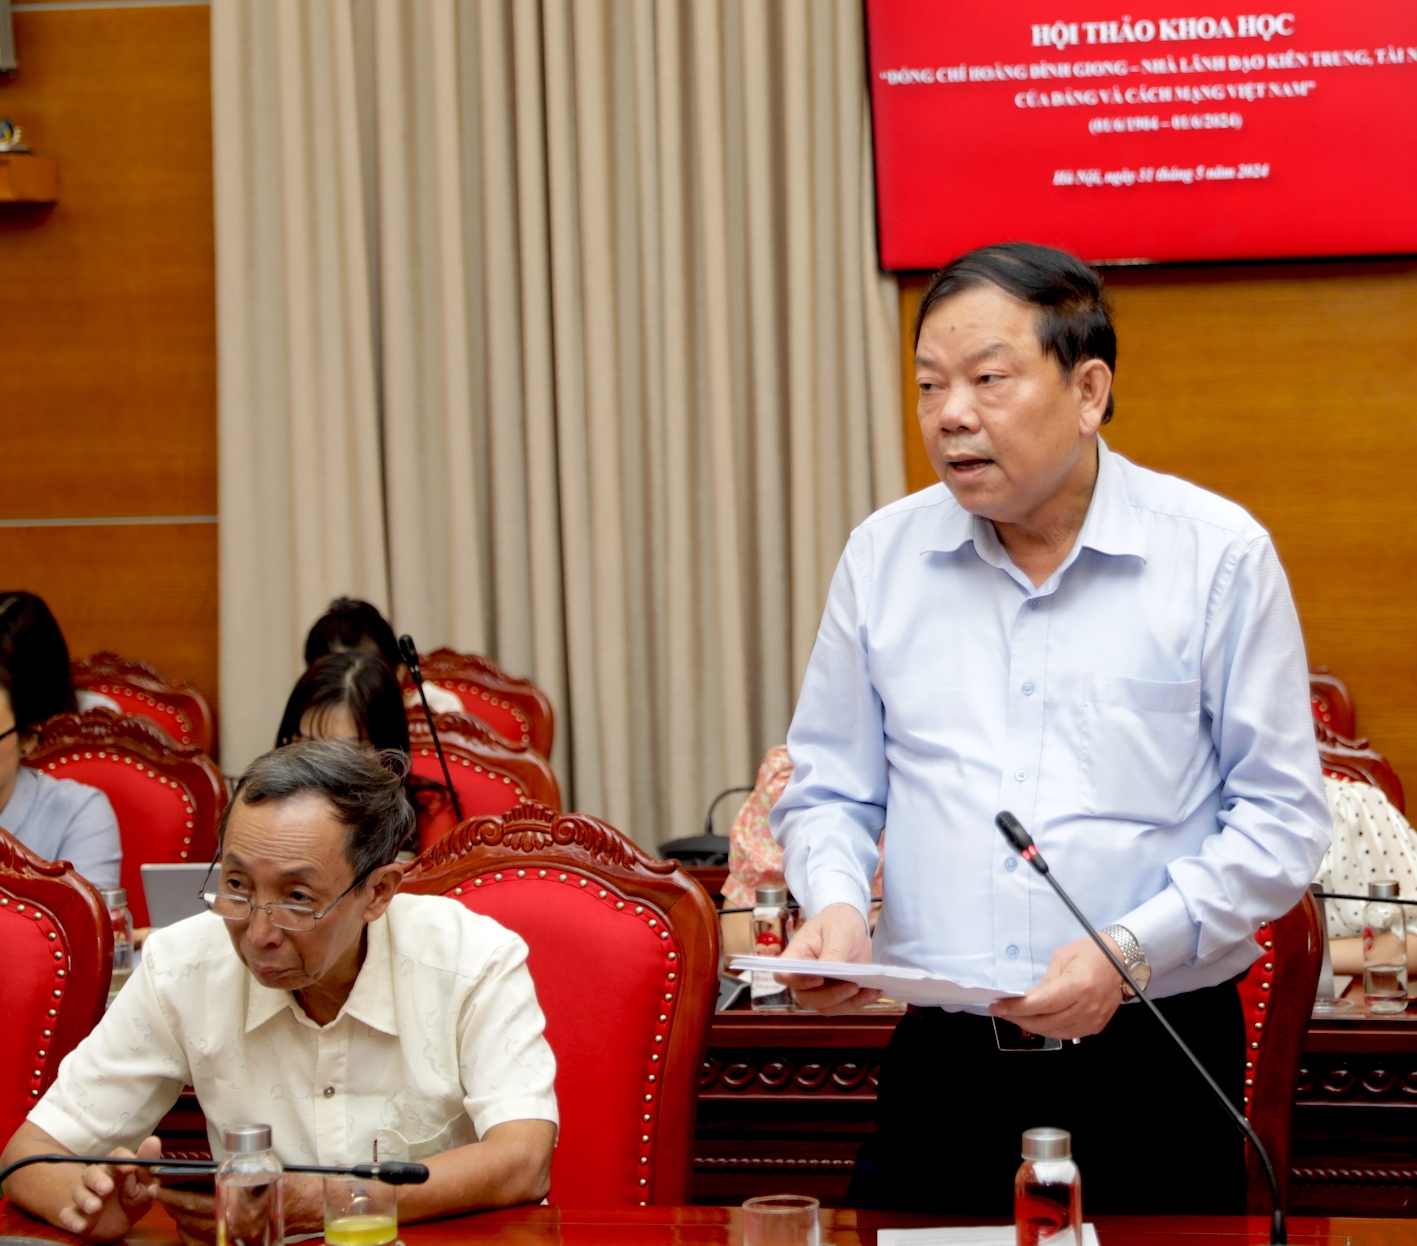 PGS.TS Trần Minh Trưởng, Nguyên Viện trưởng Viện Hồ Chí Minh và các Lãnh tụ của Đảng phát biểu tại hội thảo.